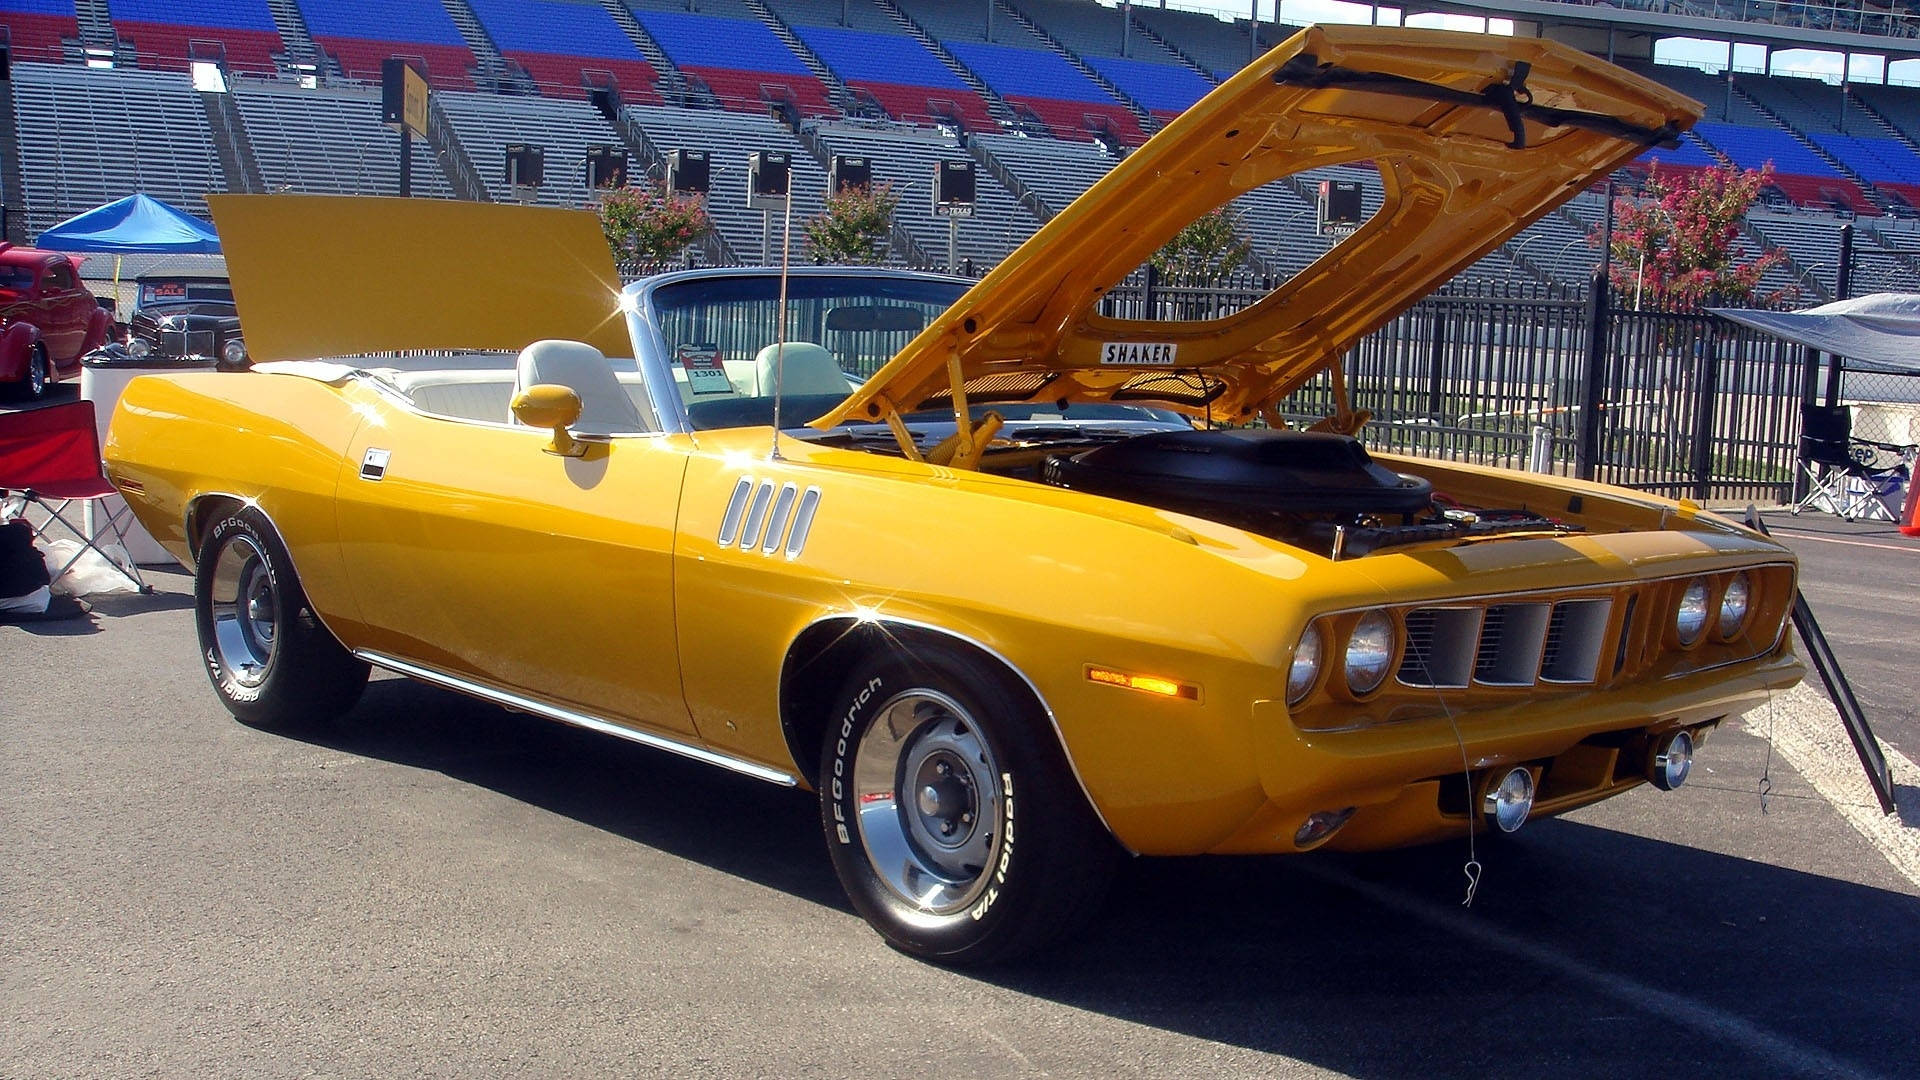 1971 Plymouth Barracuda Yellow Convertible Car Wallpaper